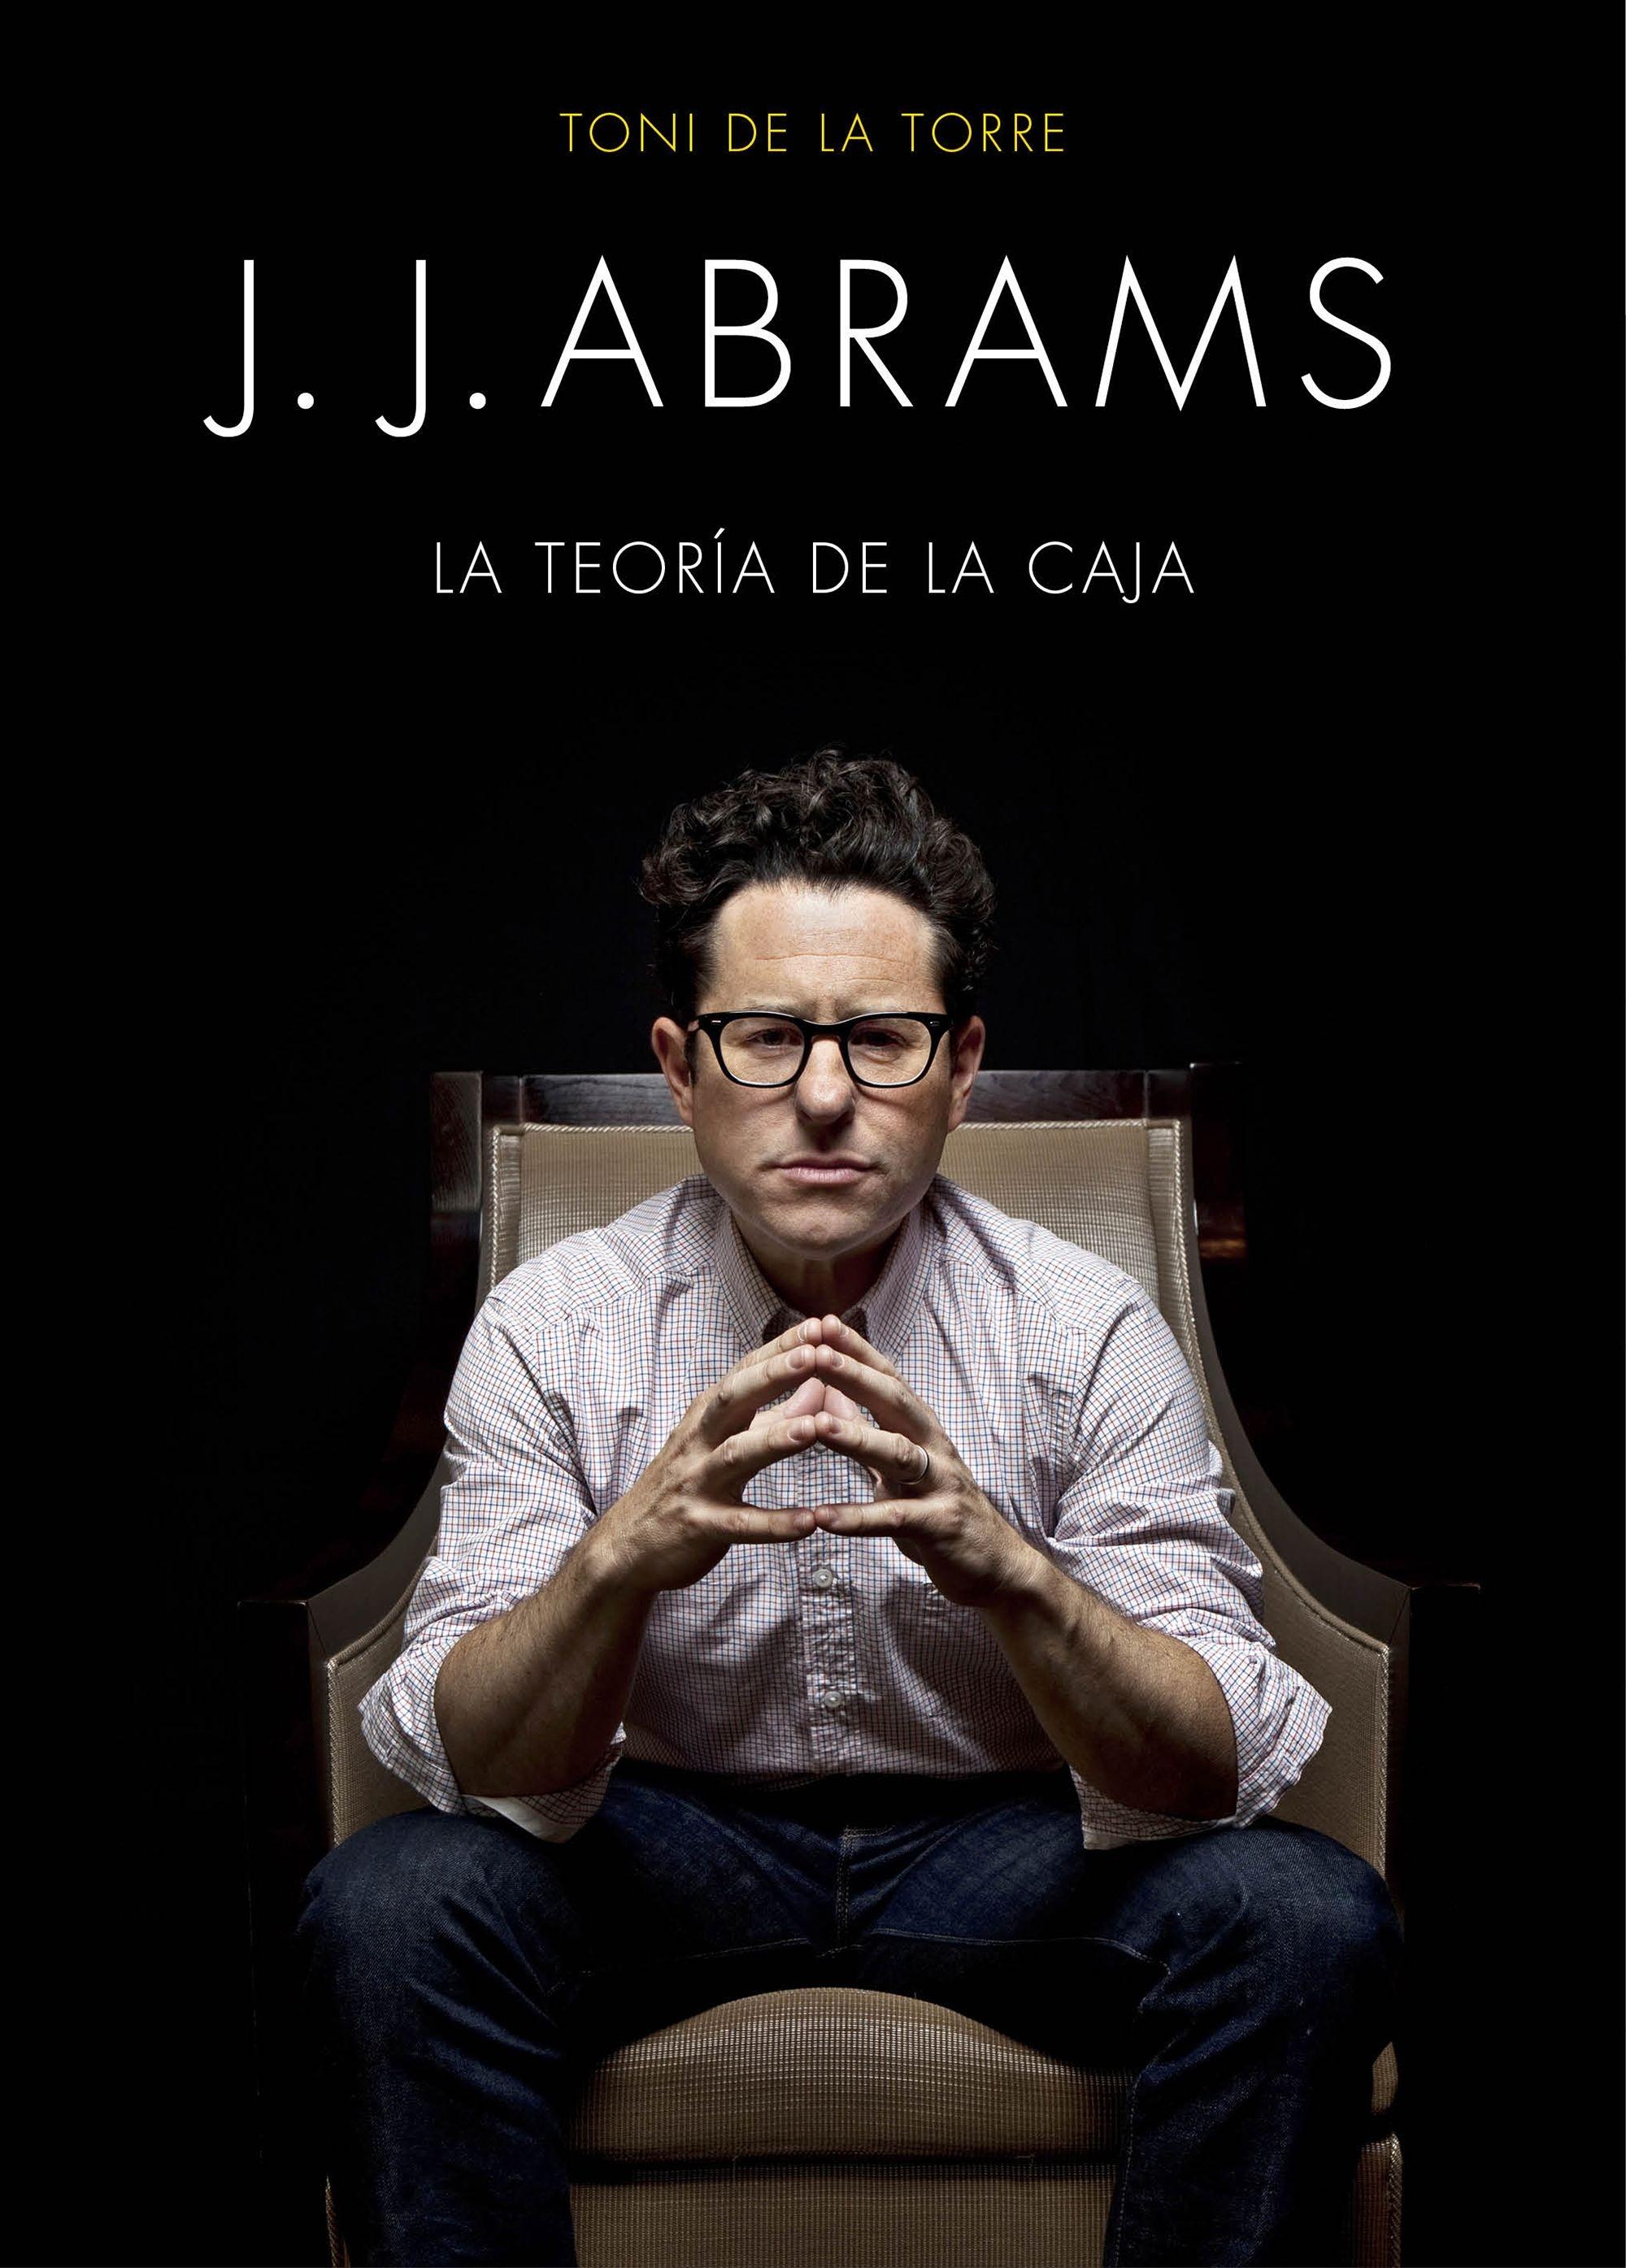 J. J. ABRAMS "LA TEORÍA DE LA CAJA". 